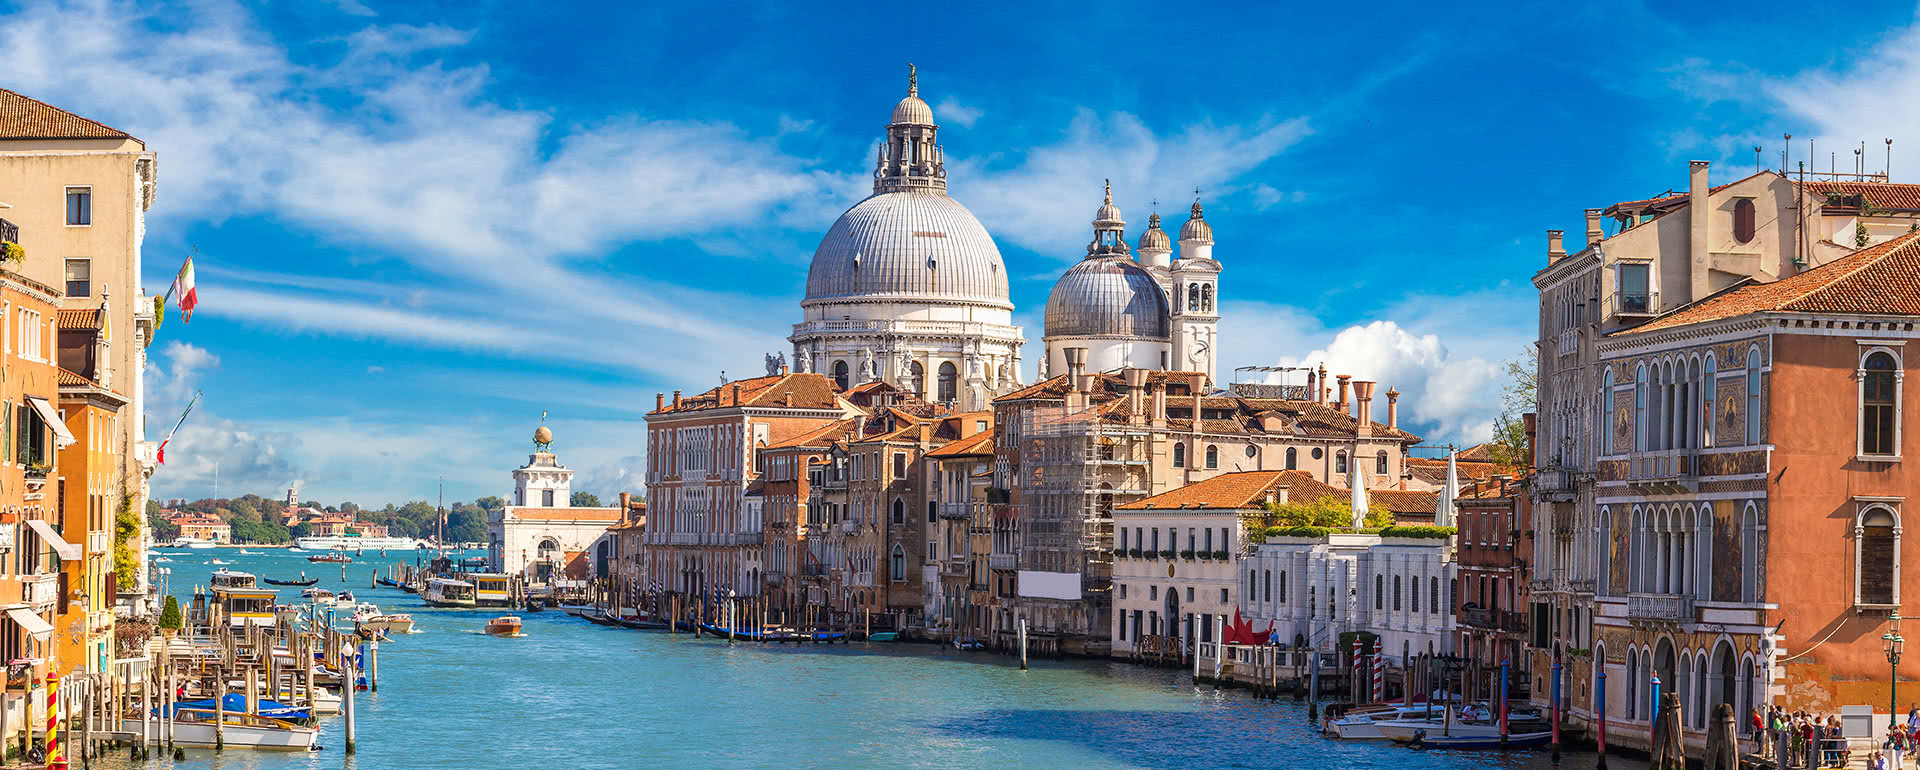 Coverbild von Venedig